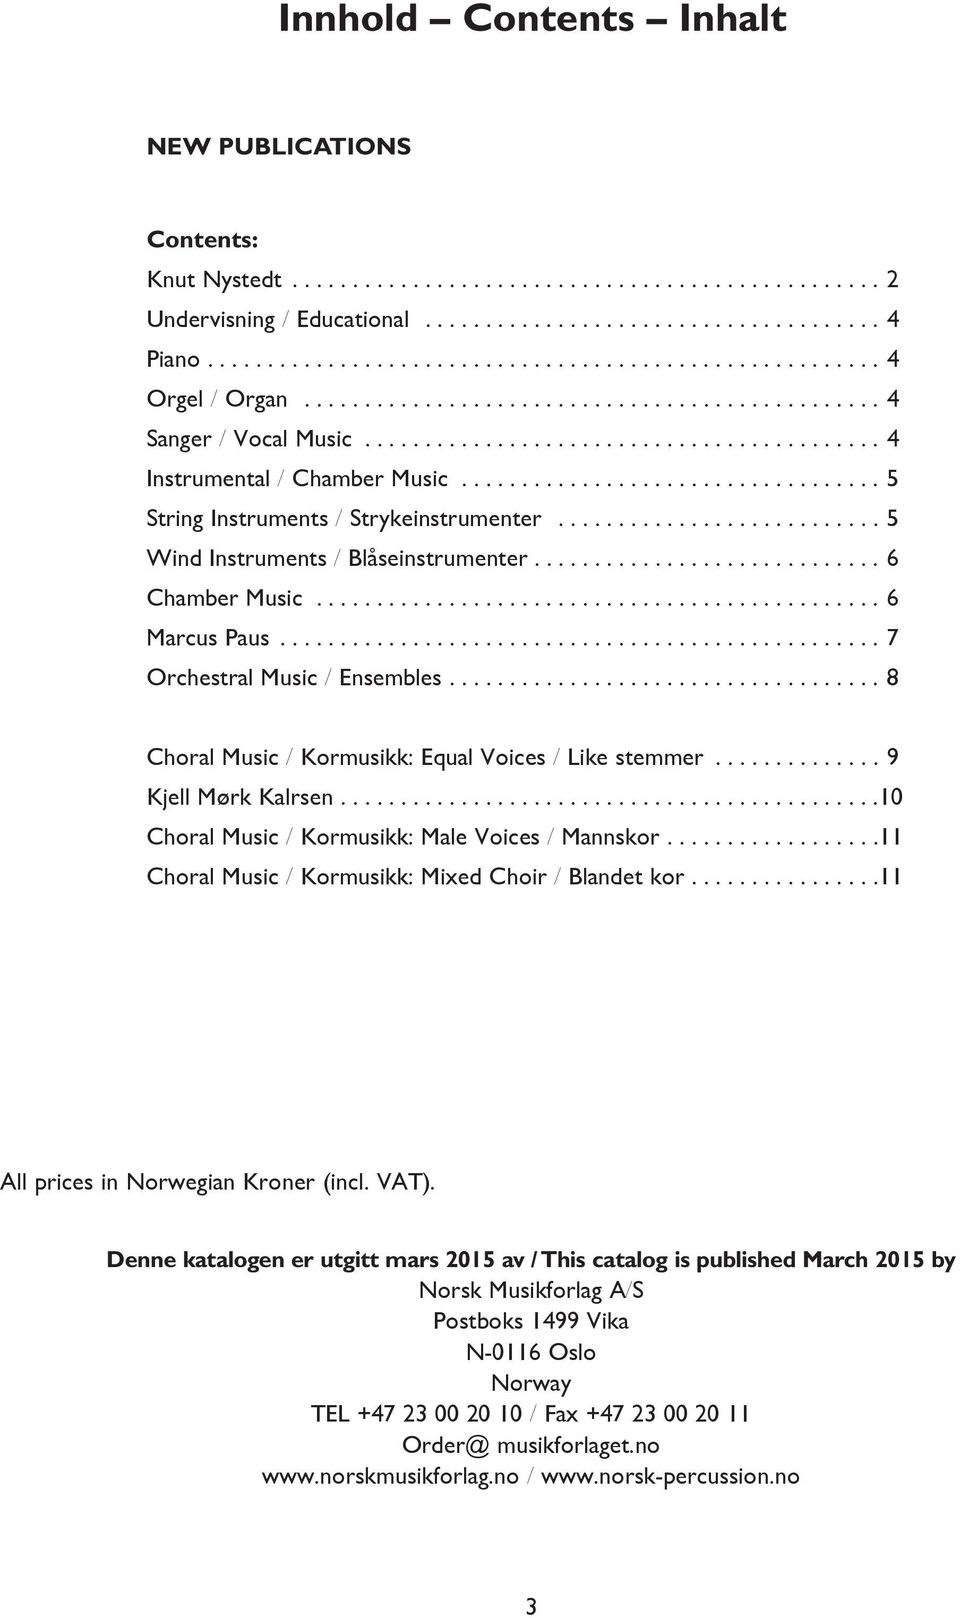 10 Choral Music / Kormusikk: Male Voices / Mannskor 11 Choral Music / Kormusikk: Mixed Choir / Blandet kor 11 All prices in Noregian Kroner (incl VAT) Denne katalogen er utgitt mars 2015 av / This